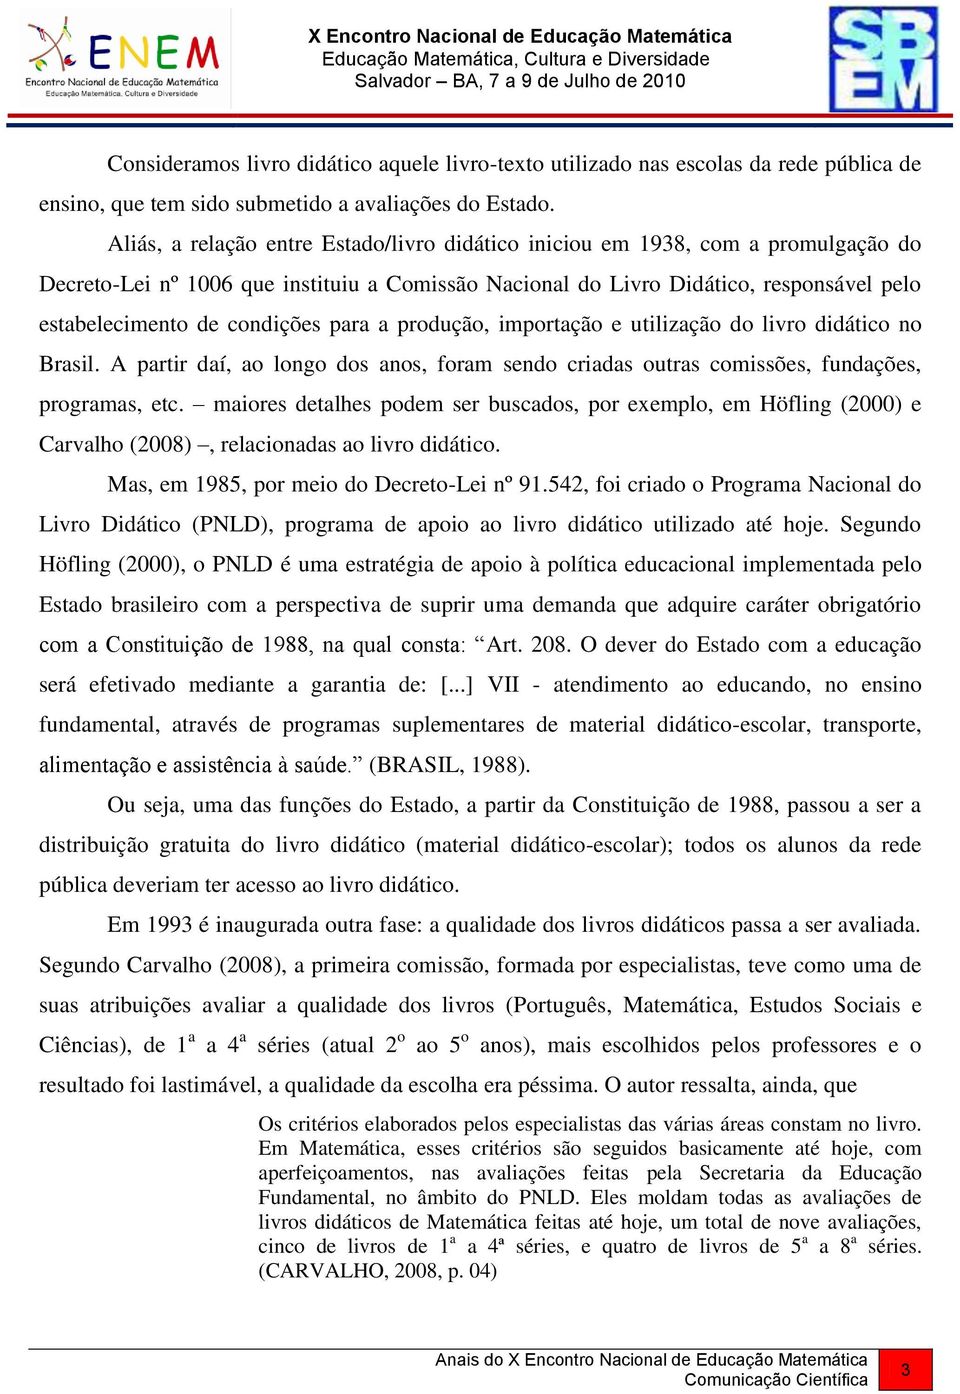 condições para a produção, importação e utilização do livro didático no Brasil. A partir daí, ao longo dos anos, foram sendo criadas outras comissões, fundações, programas, etc.